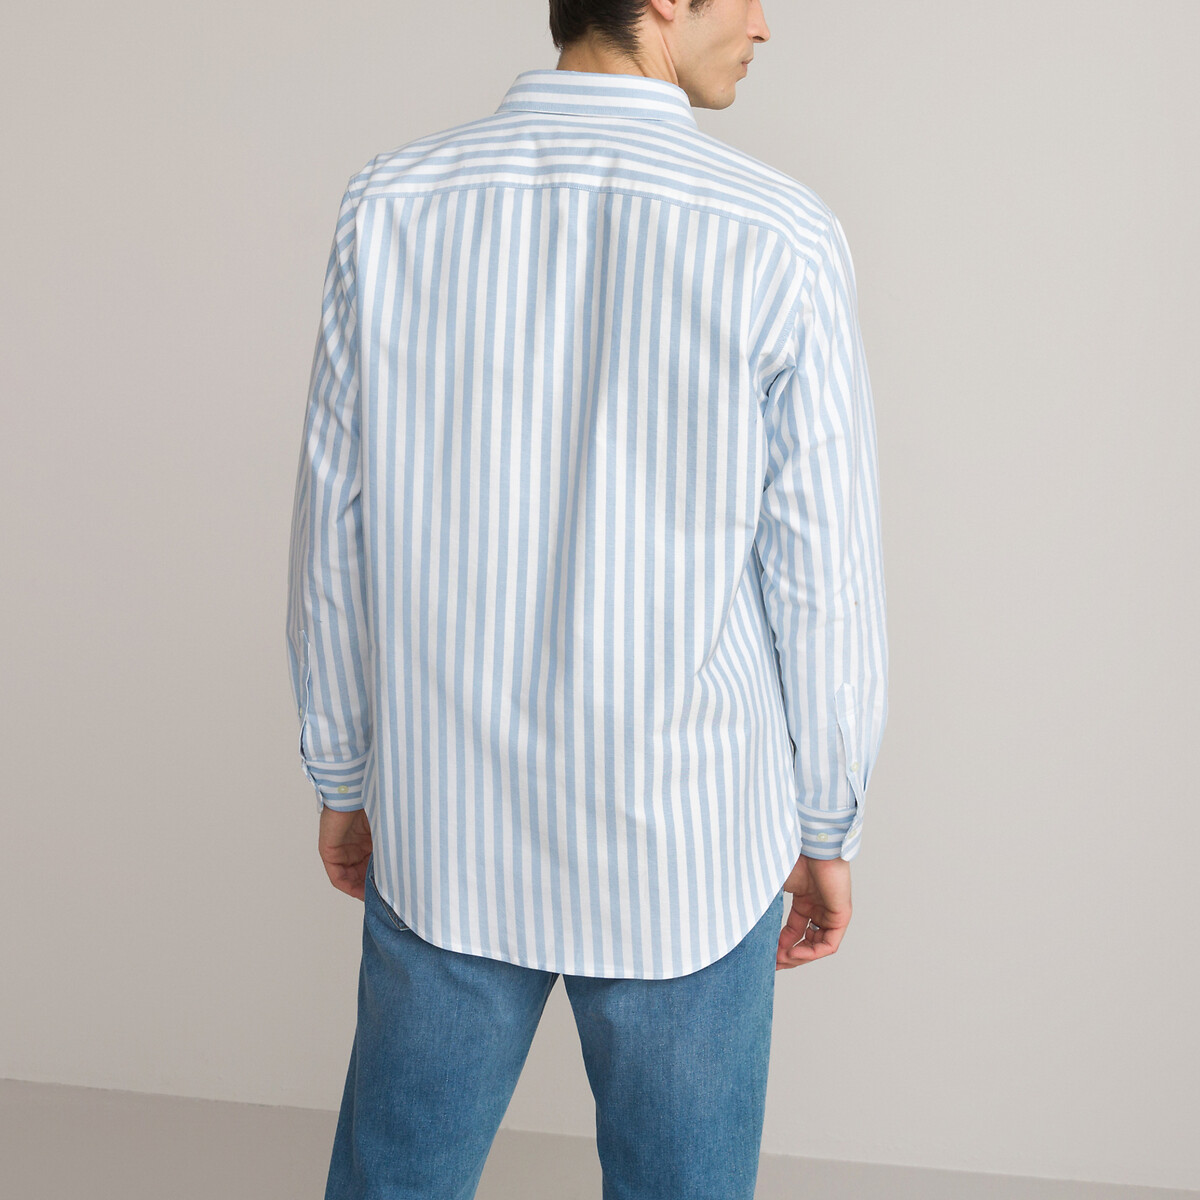 Рубашка Из ткани оксфорд прямого покроя с французским воротником 45/46 синий LaRedoute, размер 45/46 Рубашка Из ткани оксфорд прямого покроя с французским воротником 45/46 синий - фото 4